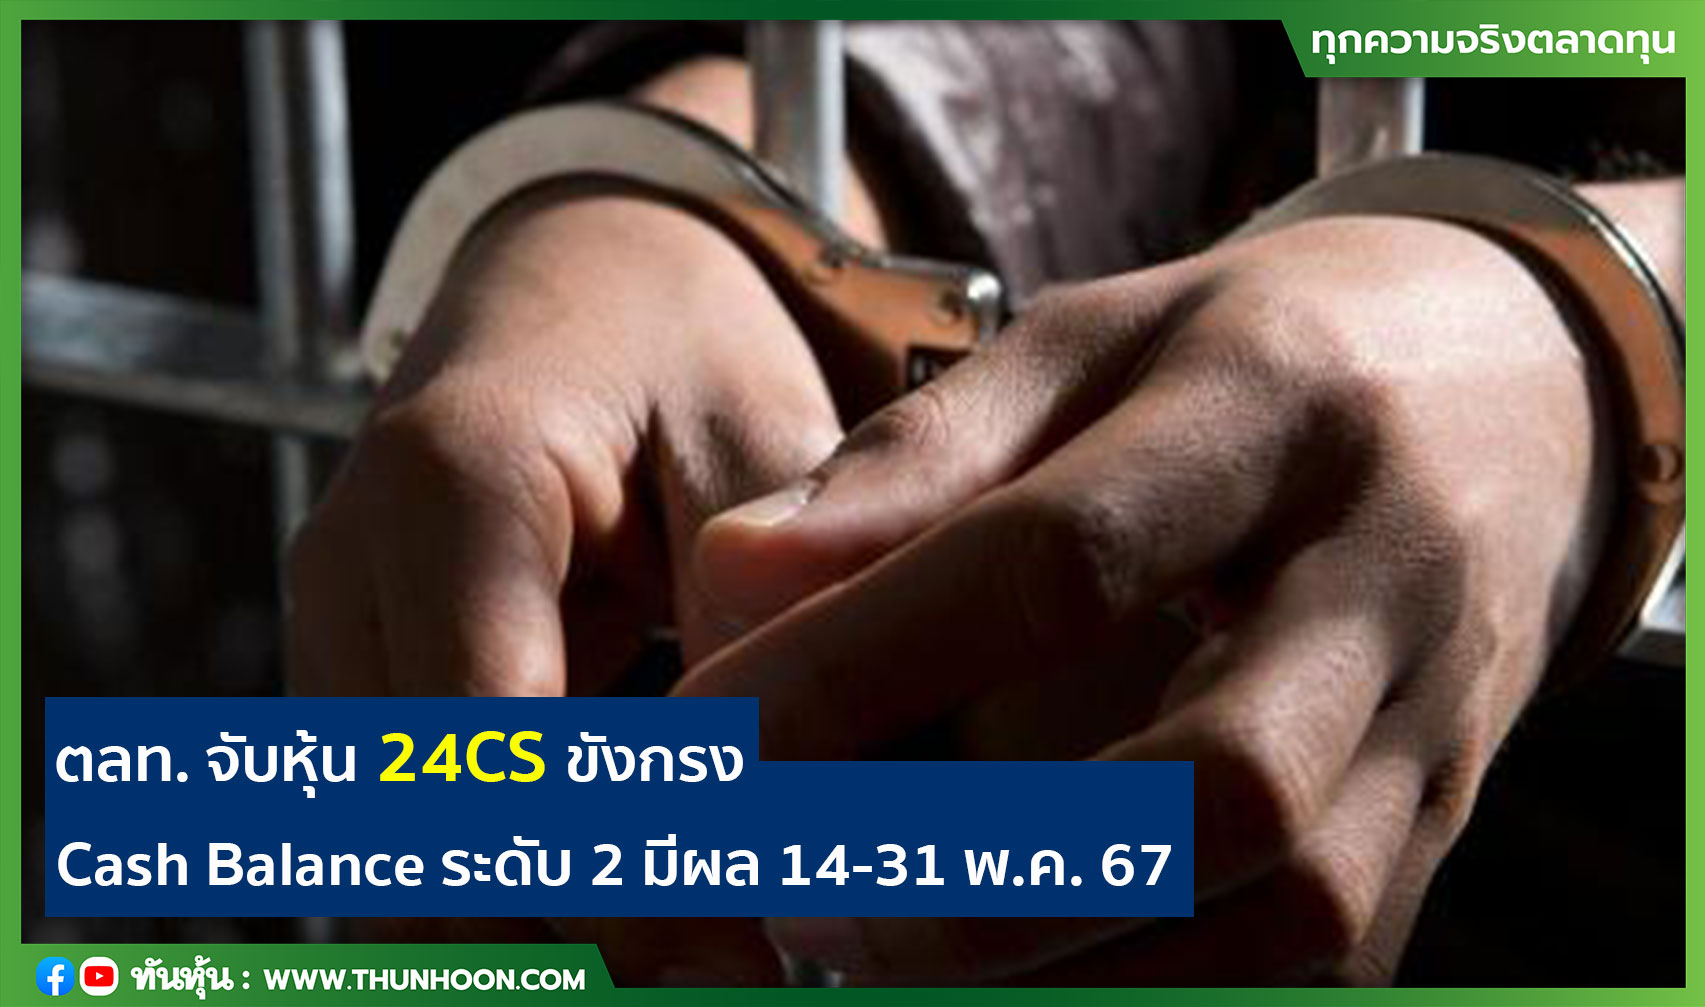 ตลท. จับหุ้น 24CS ขังกรง Cash Balance ระดับ 2 มีผล 14-31 พ.ค. 67